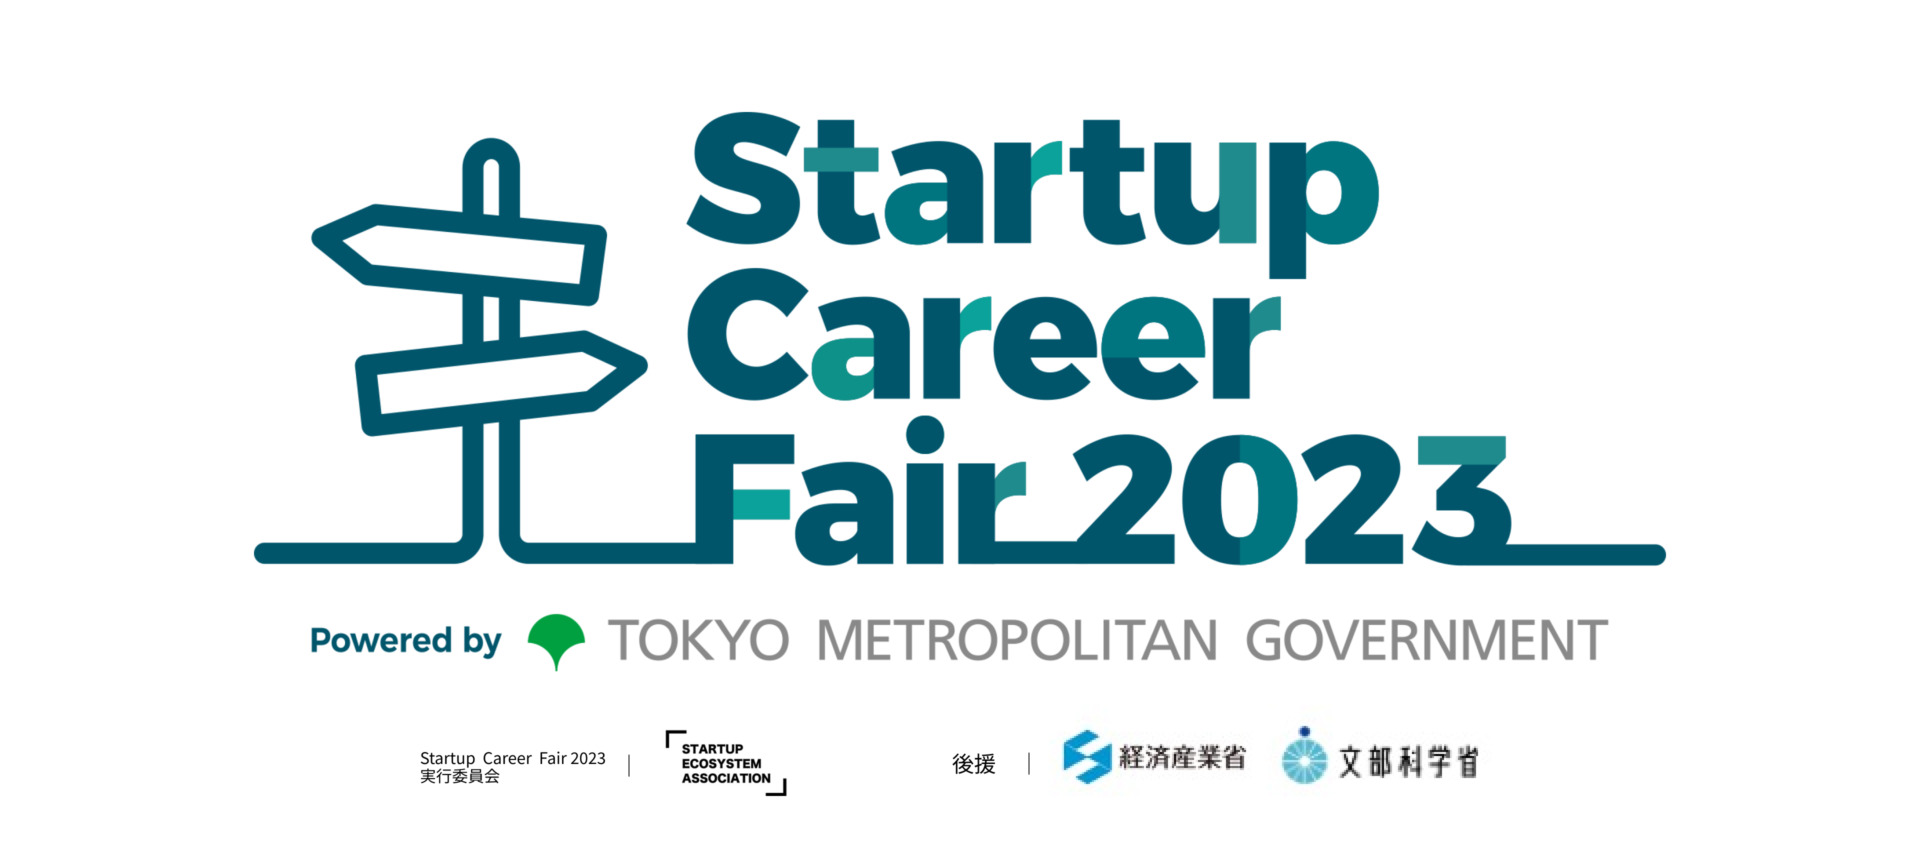 1月27日・28日に行われる東京都・一般社団法人スタートアップエコシステム協会主催のキャリアイベント「Startup Career Fair 2023」に出展中です。